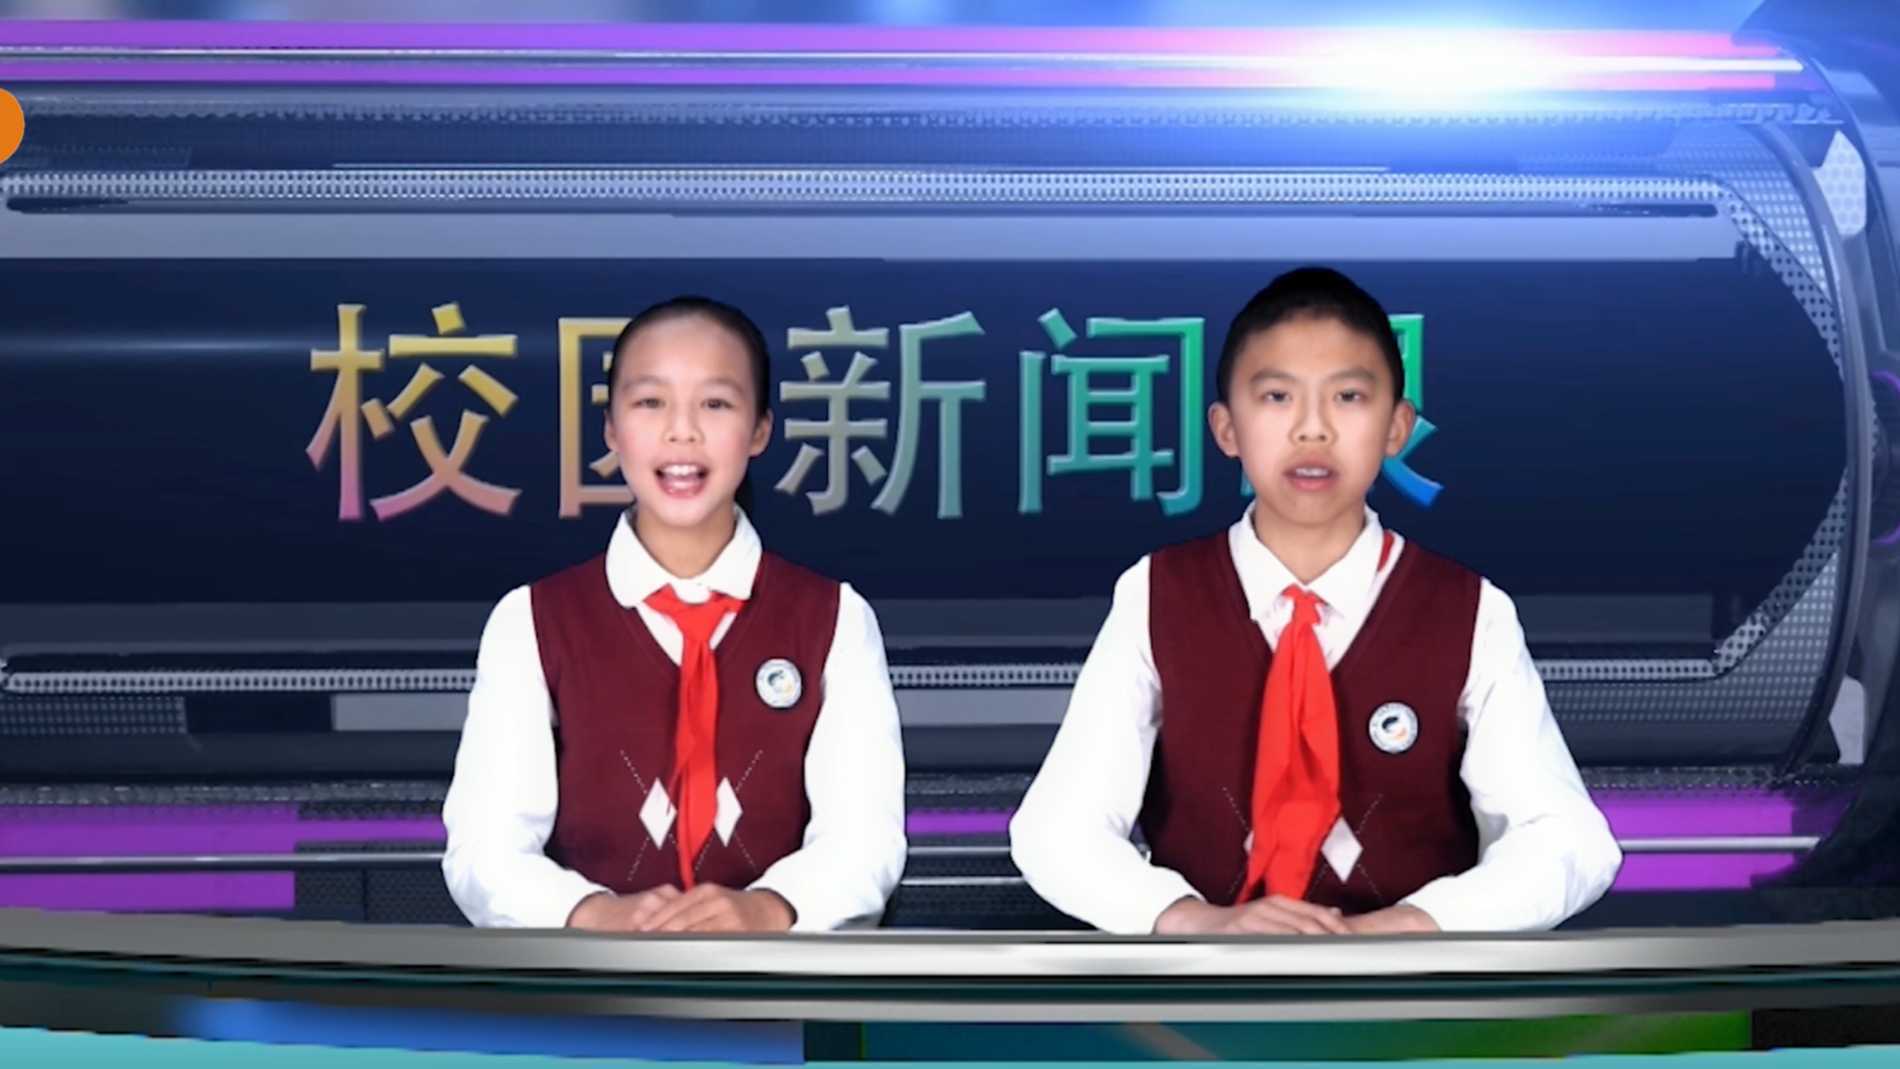 2021年11月松阳县实验小学集团学校校园电视台节目